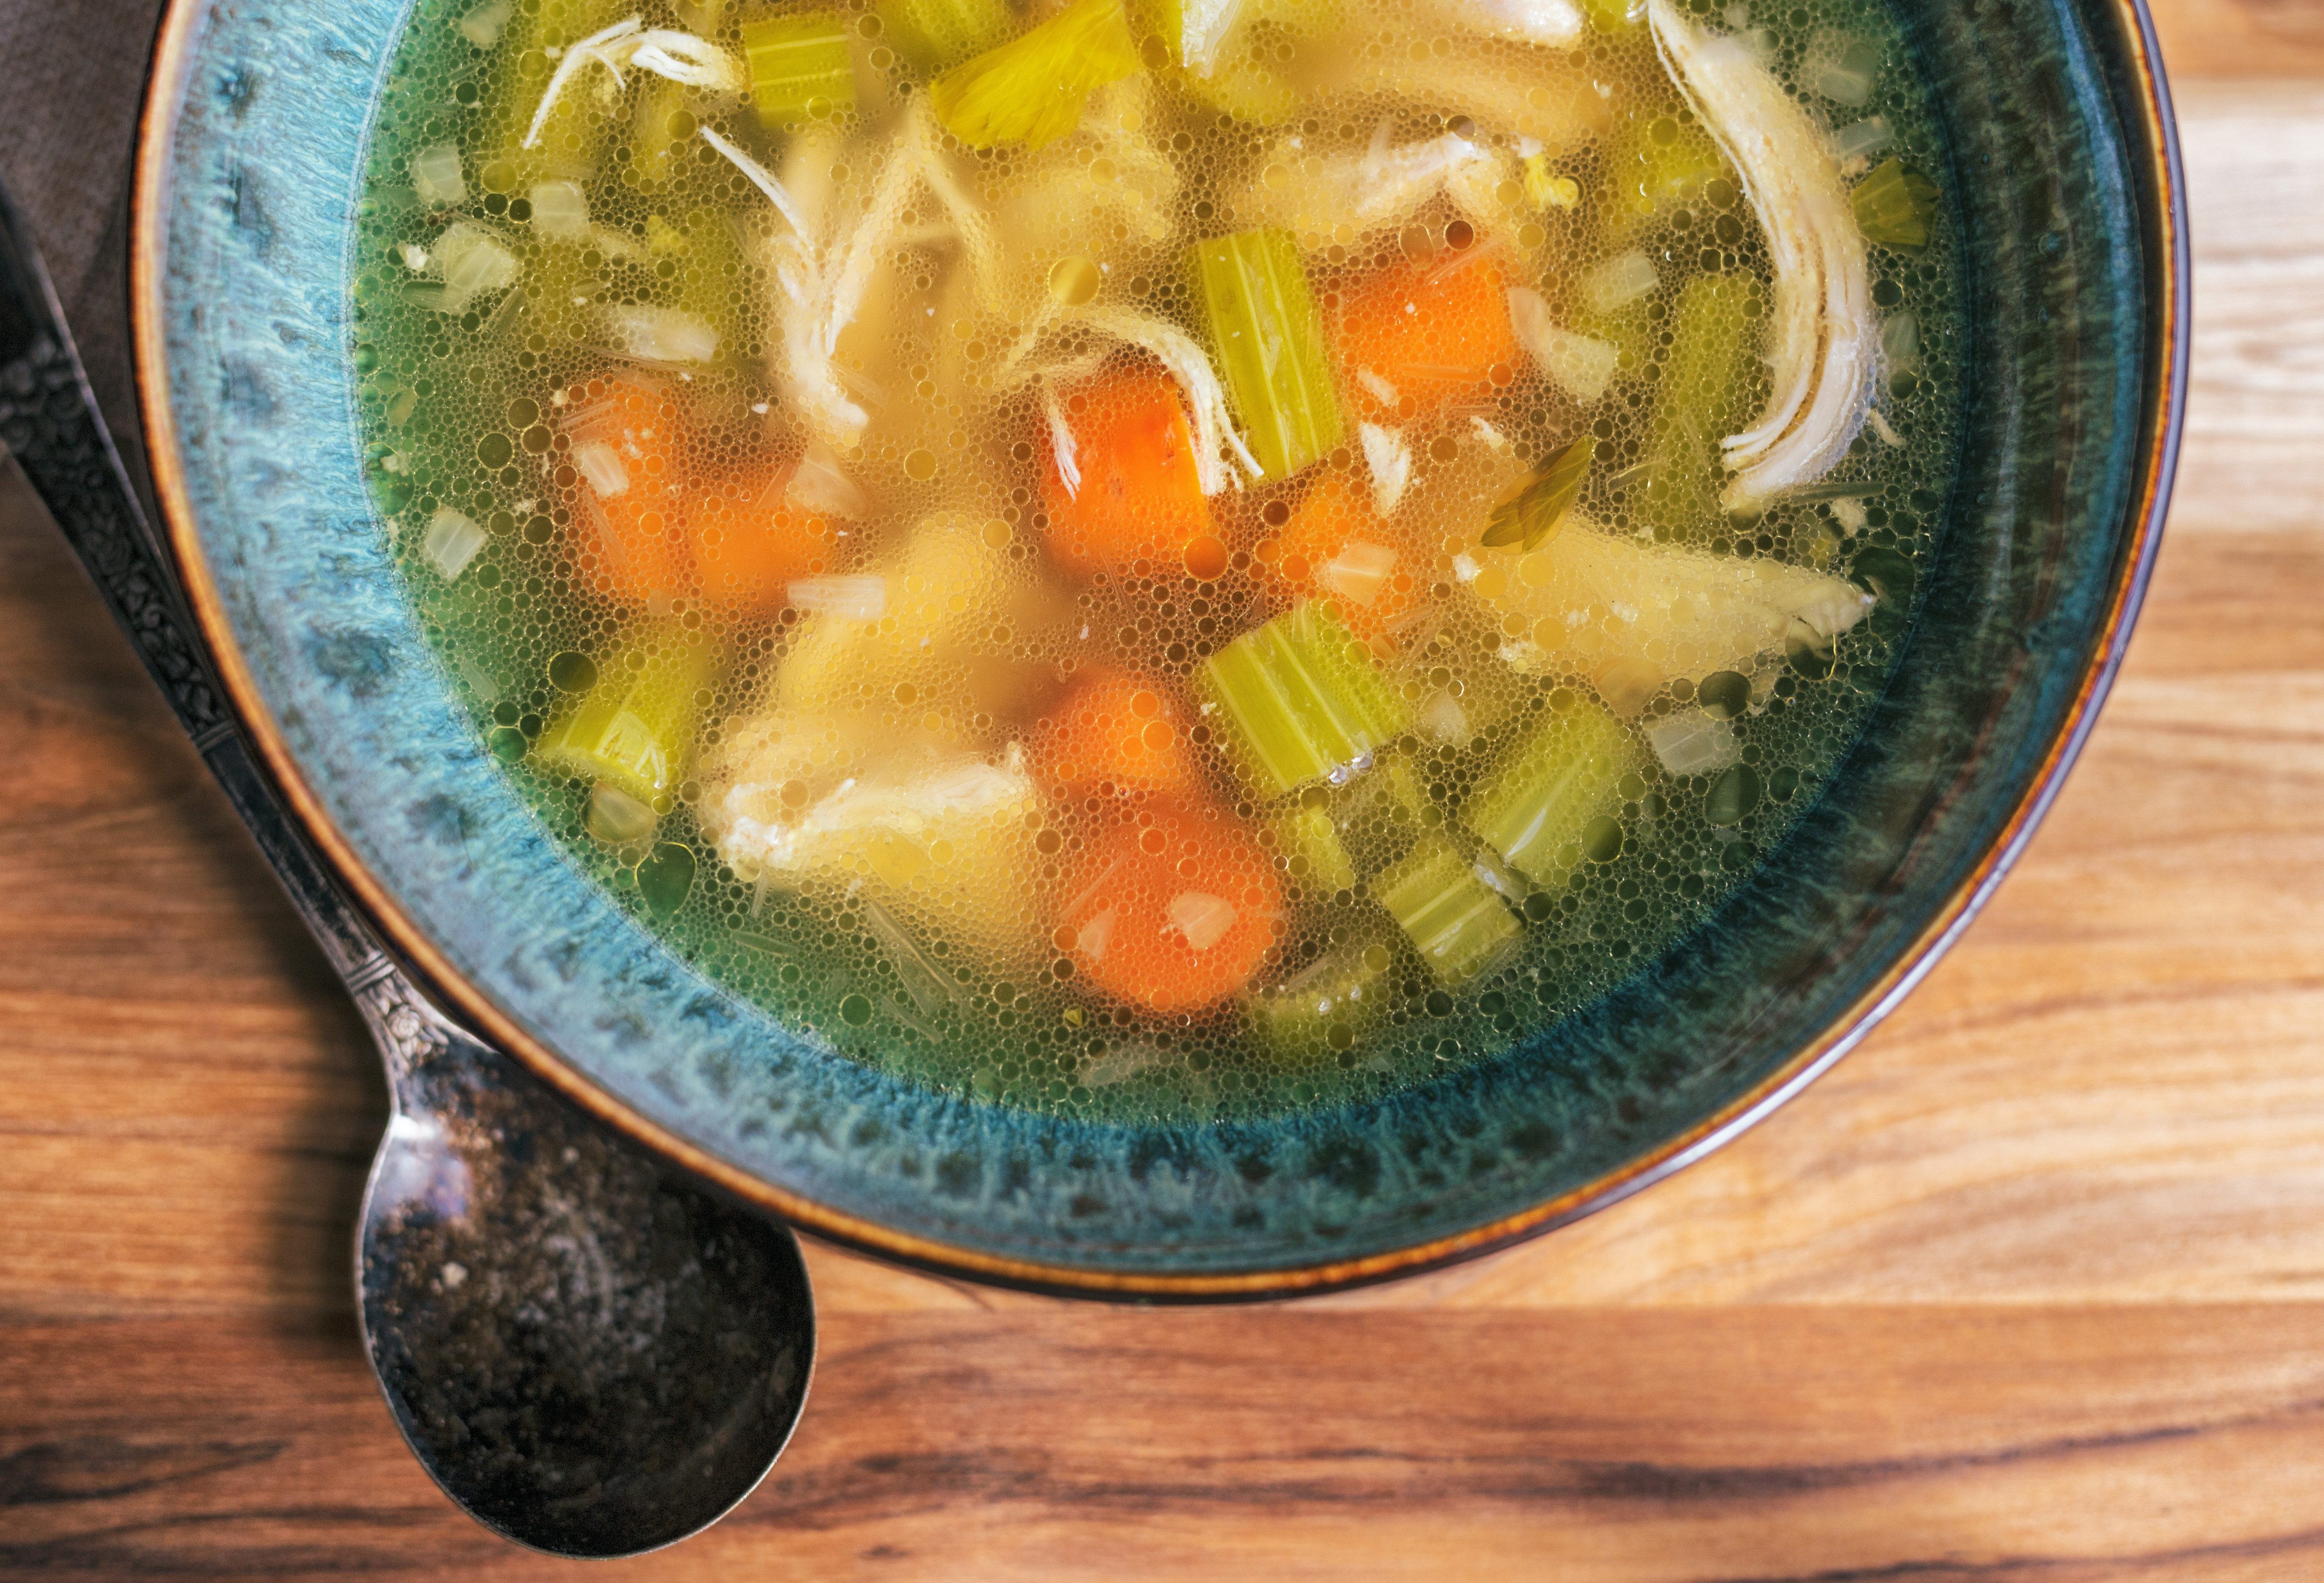 Vajon ehetünk levest fogyókúra idején vagy csak felesleges kalóriaforrásnak számít? | Nosalty